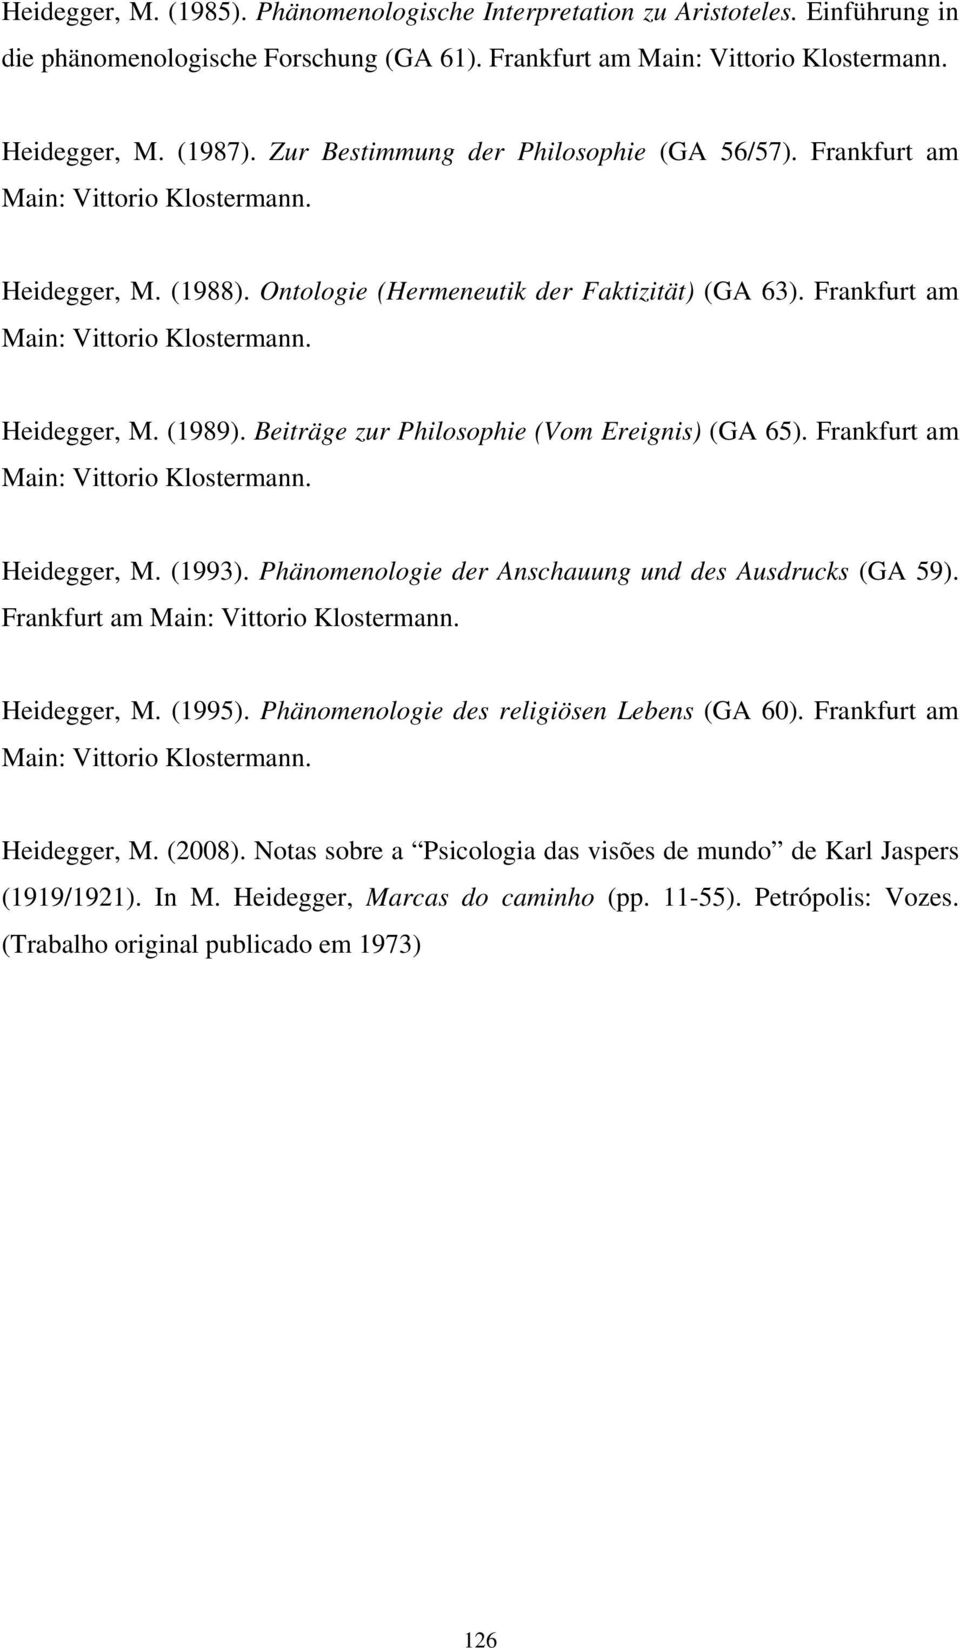 Beiträge zur Philosophie (Vom Ereignis) (GA 65). Frankfurt am Main: Vittorio Klostermann. Heidegger, M. (1993). Phänomenologie der Anschauung und des Ausdrucks (GA 59).